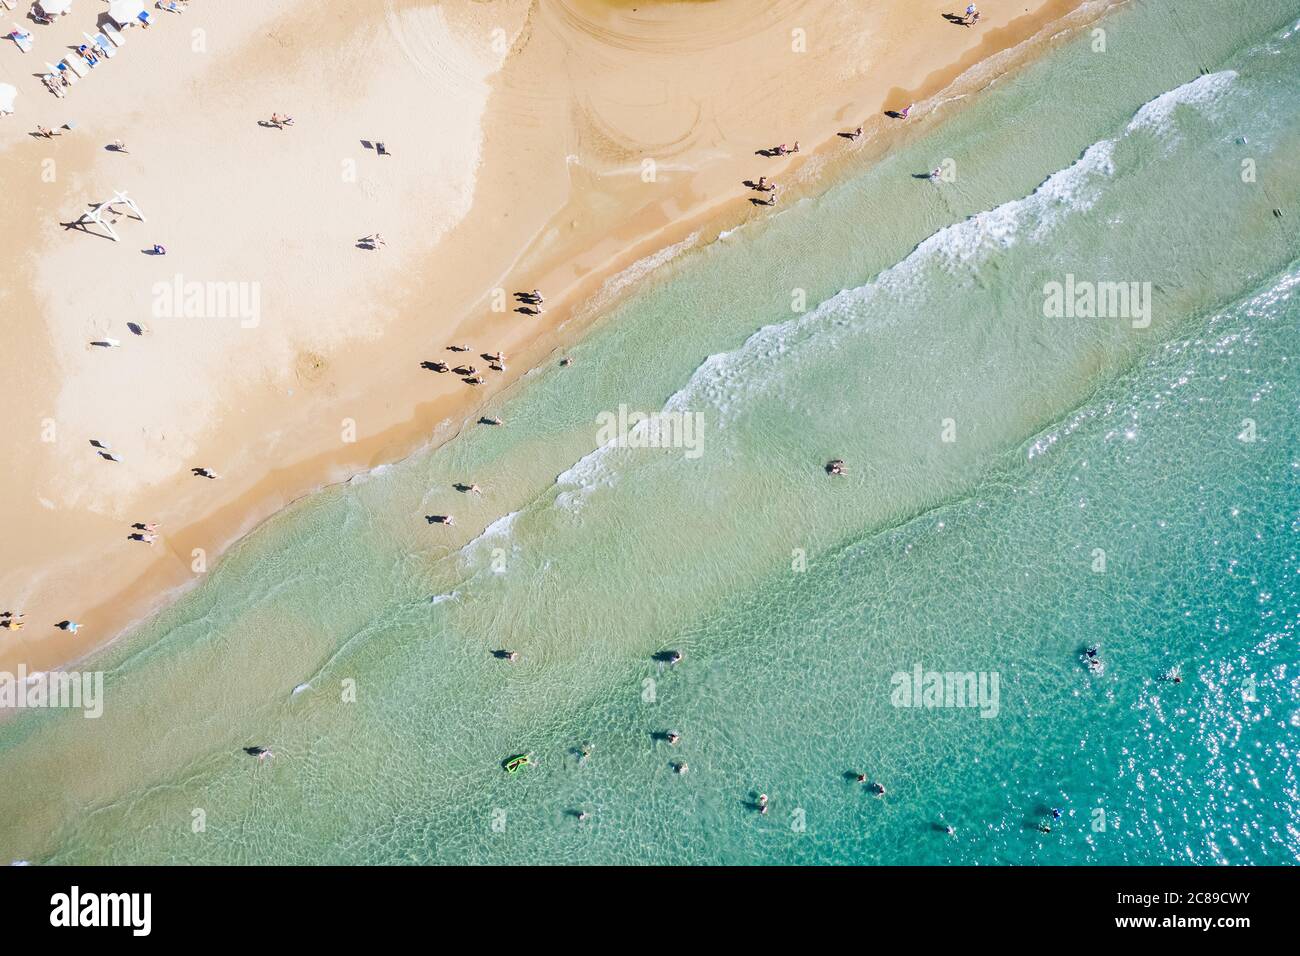 Vue aérienne d'une plage de sable peu profonde et d'un parasol avec parasols. Concept tourisme et vacances. Photo de haute qualité Banque D'Images